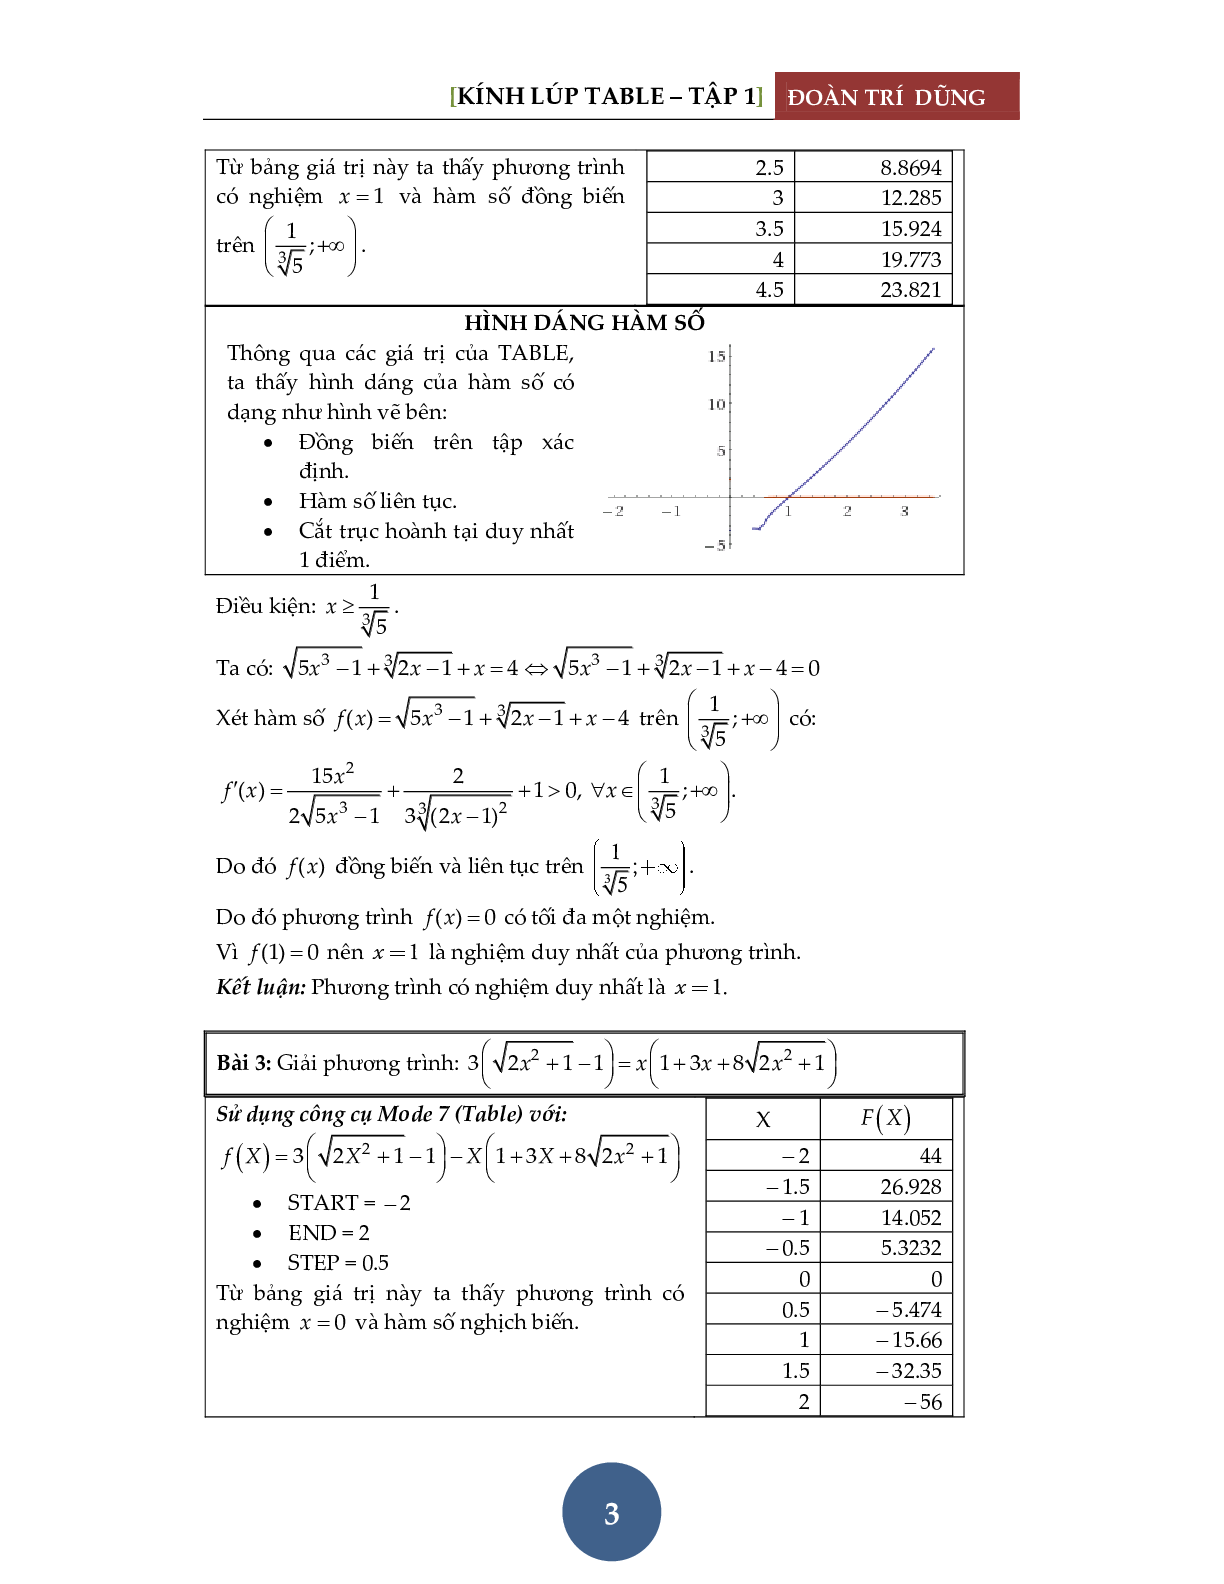 Giải phương trình bằng máy tính Casio – Tập 1: Đánh giá hàm đơn điệu (trang 4)